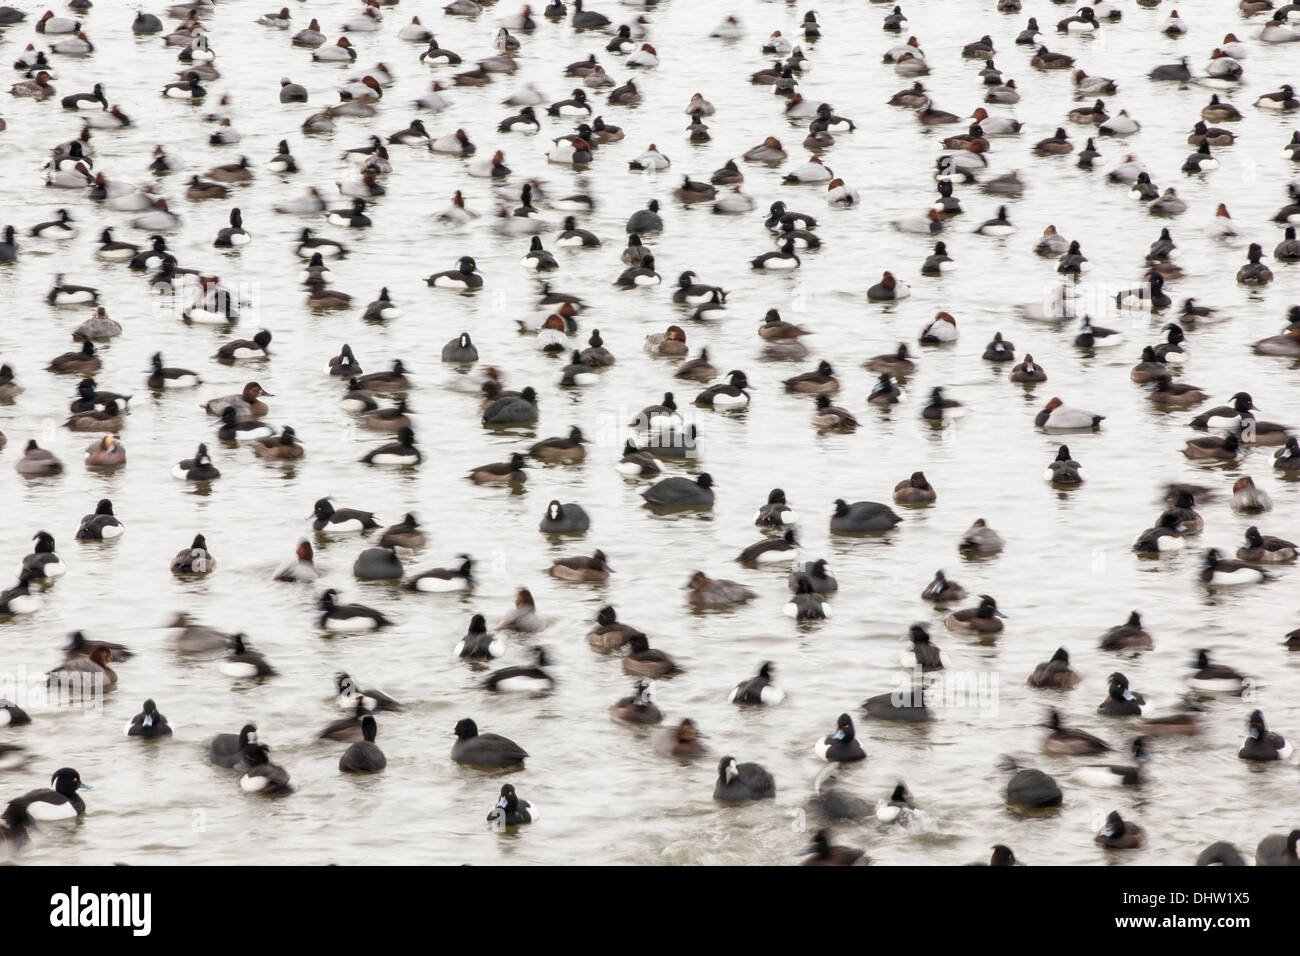 Niederlande, Marken, verschiedene Enten in Loch in das Eis des Sees genannt Gouwzee, Teil des IJsselmeer. Winter. Hintergrund-Skater Stockfoto